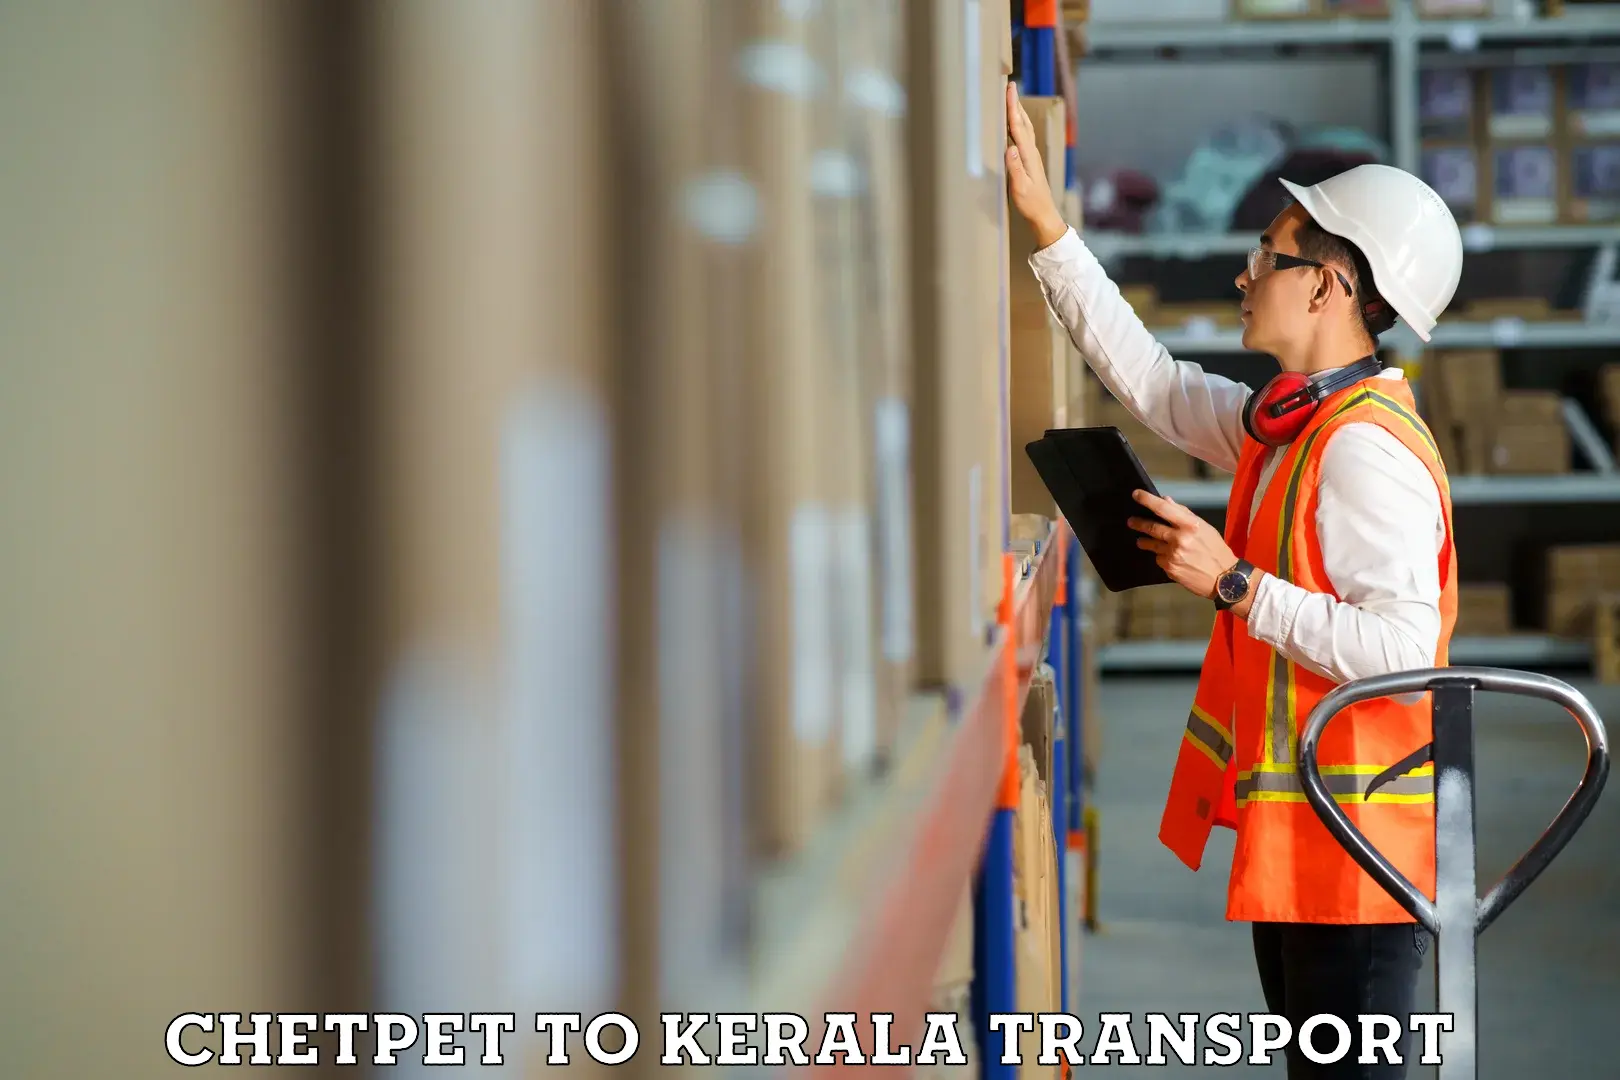 Intercity transport Chetpet to Kochi